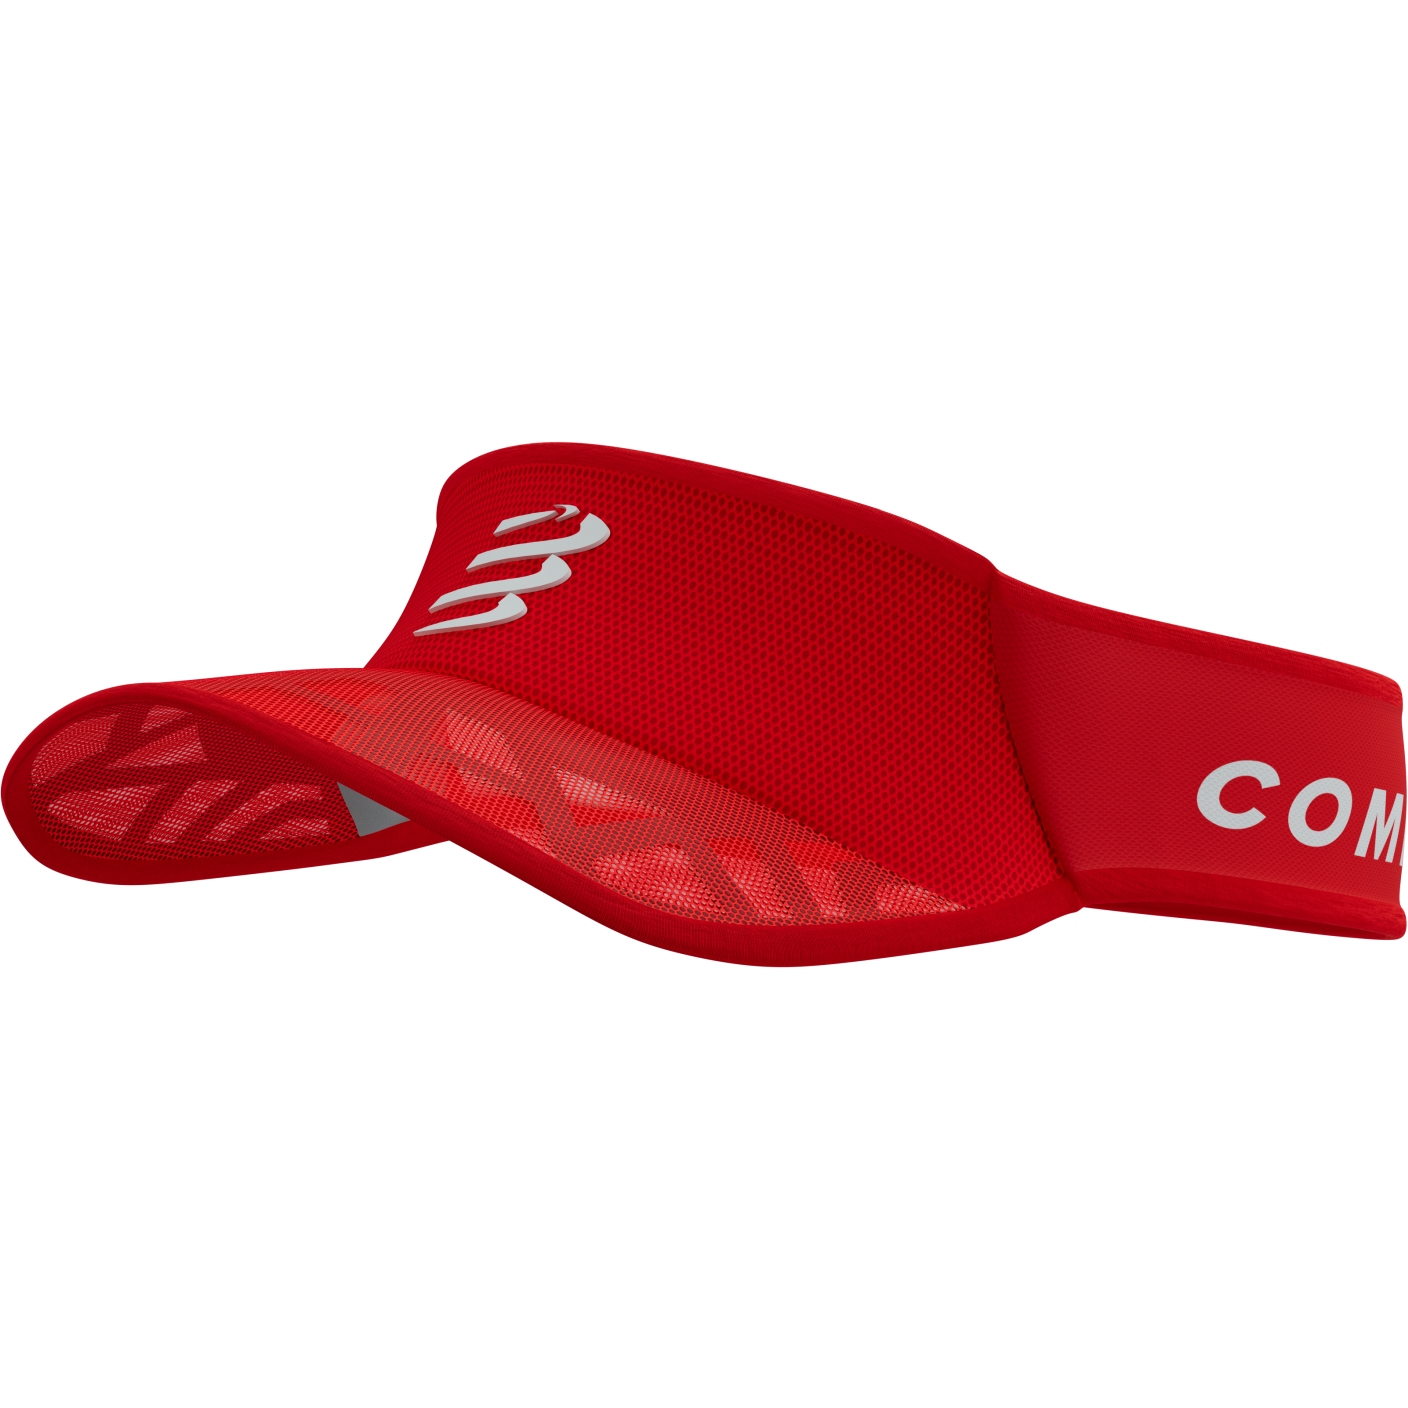 Productfoto van Compressport Spiderweb Ultralight Vizier - core red/white